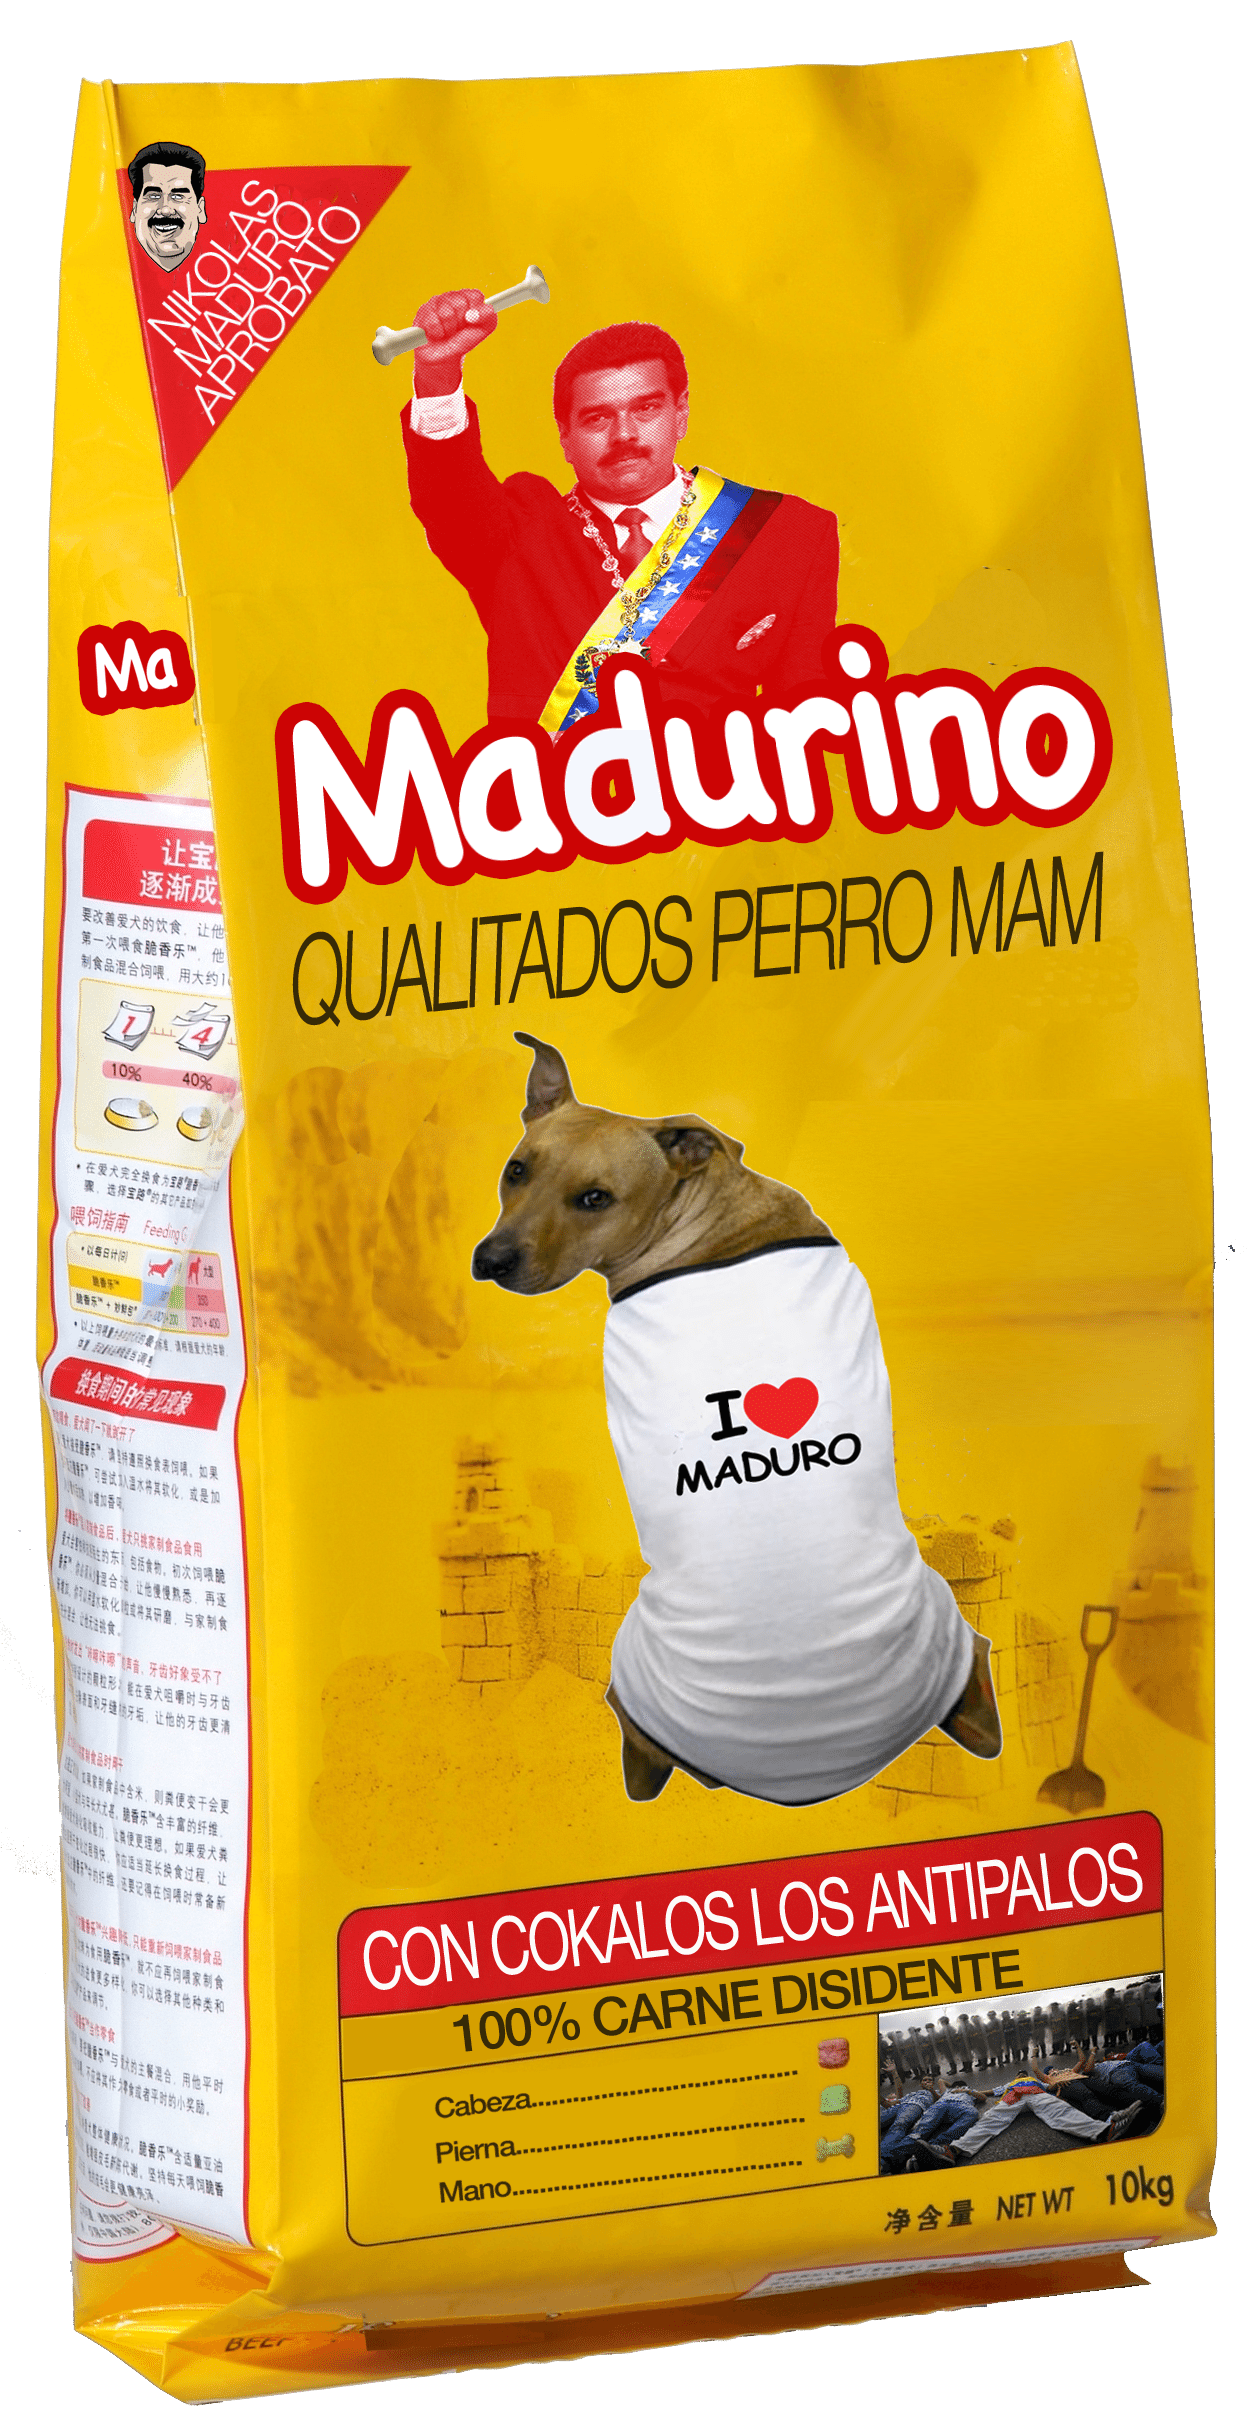 Η χαρακτηριστική συσκευασία των σκυλοτροφών Madurino φτιαγμένες «Con Cokalos Los Antipalos» - δηλαδή από κόκαλα αντιπάλων του καθεστώτος